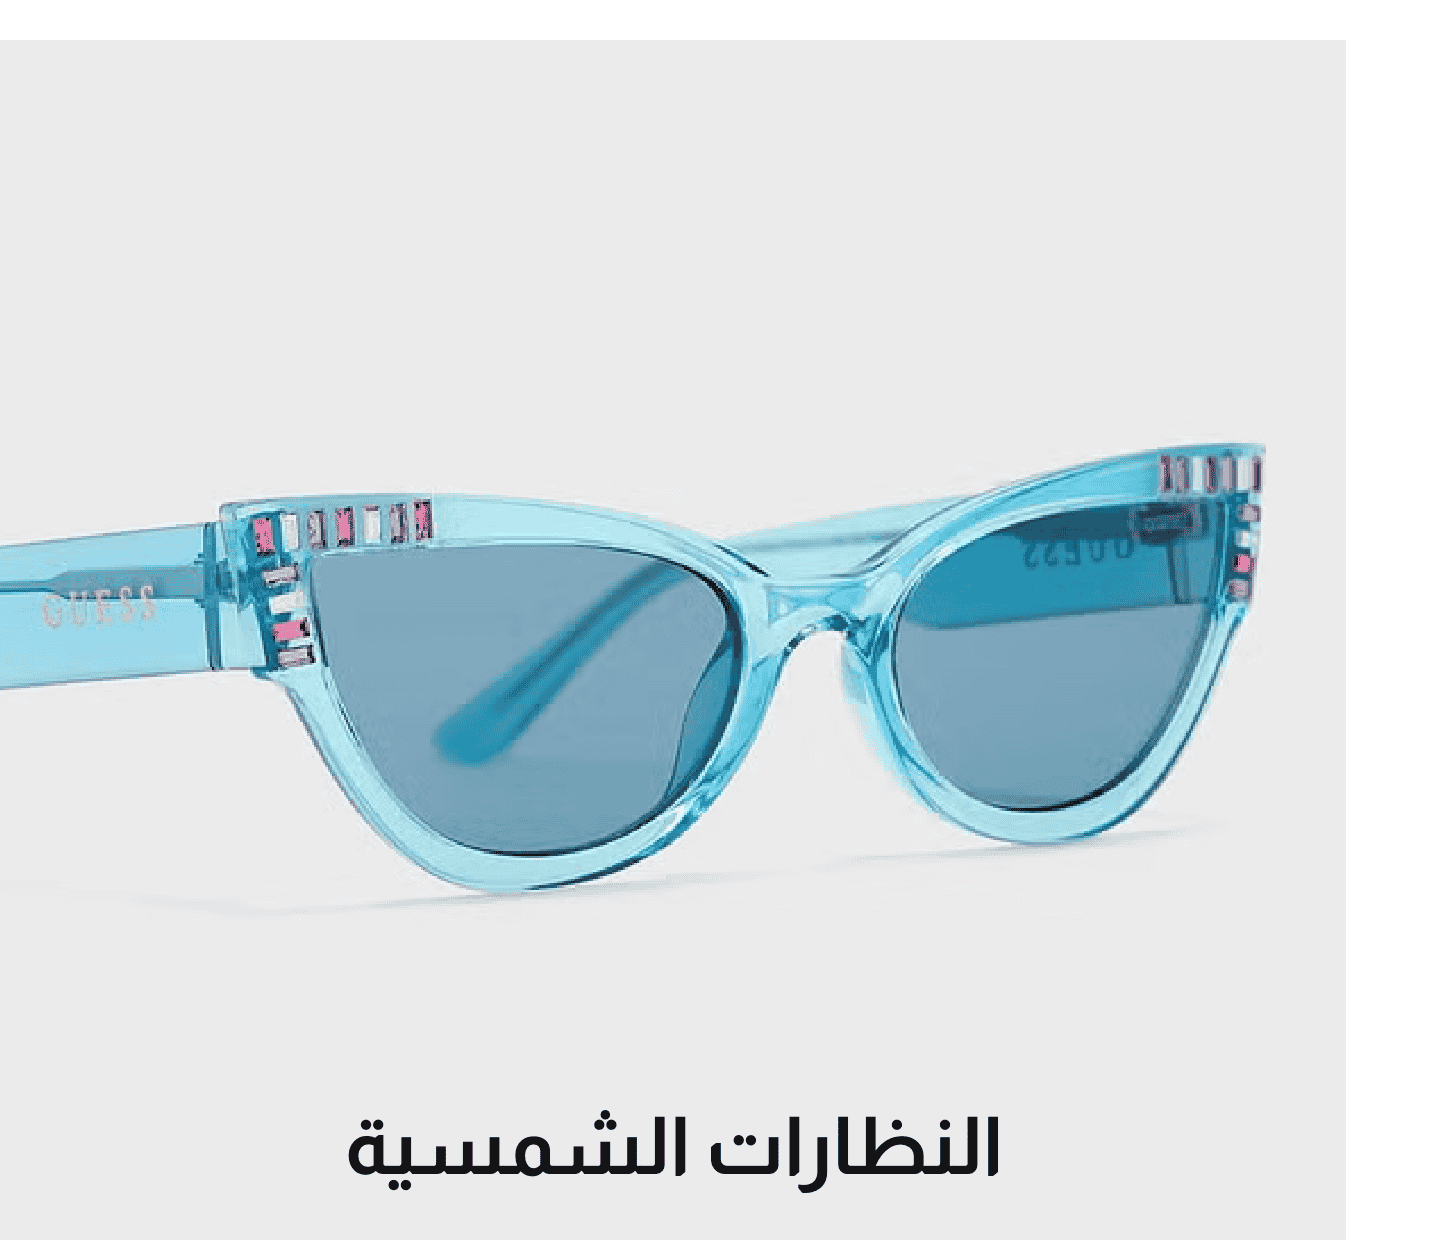 /women/sivvi-sunglasses-collection